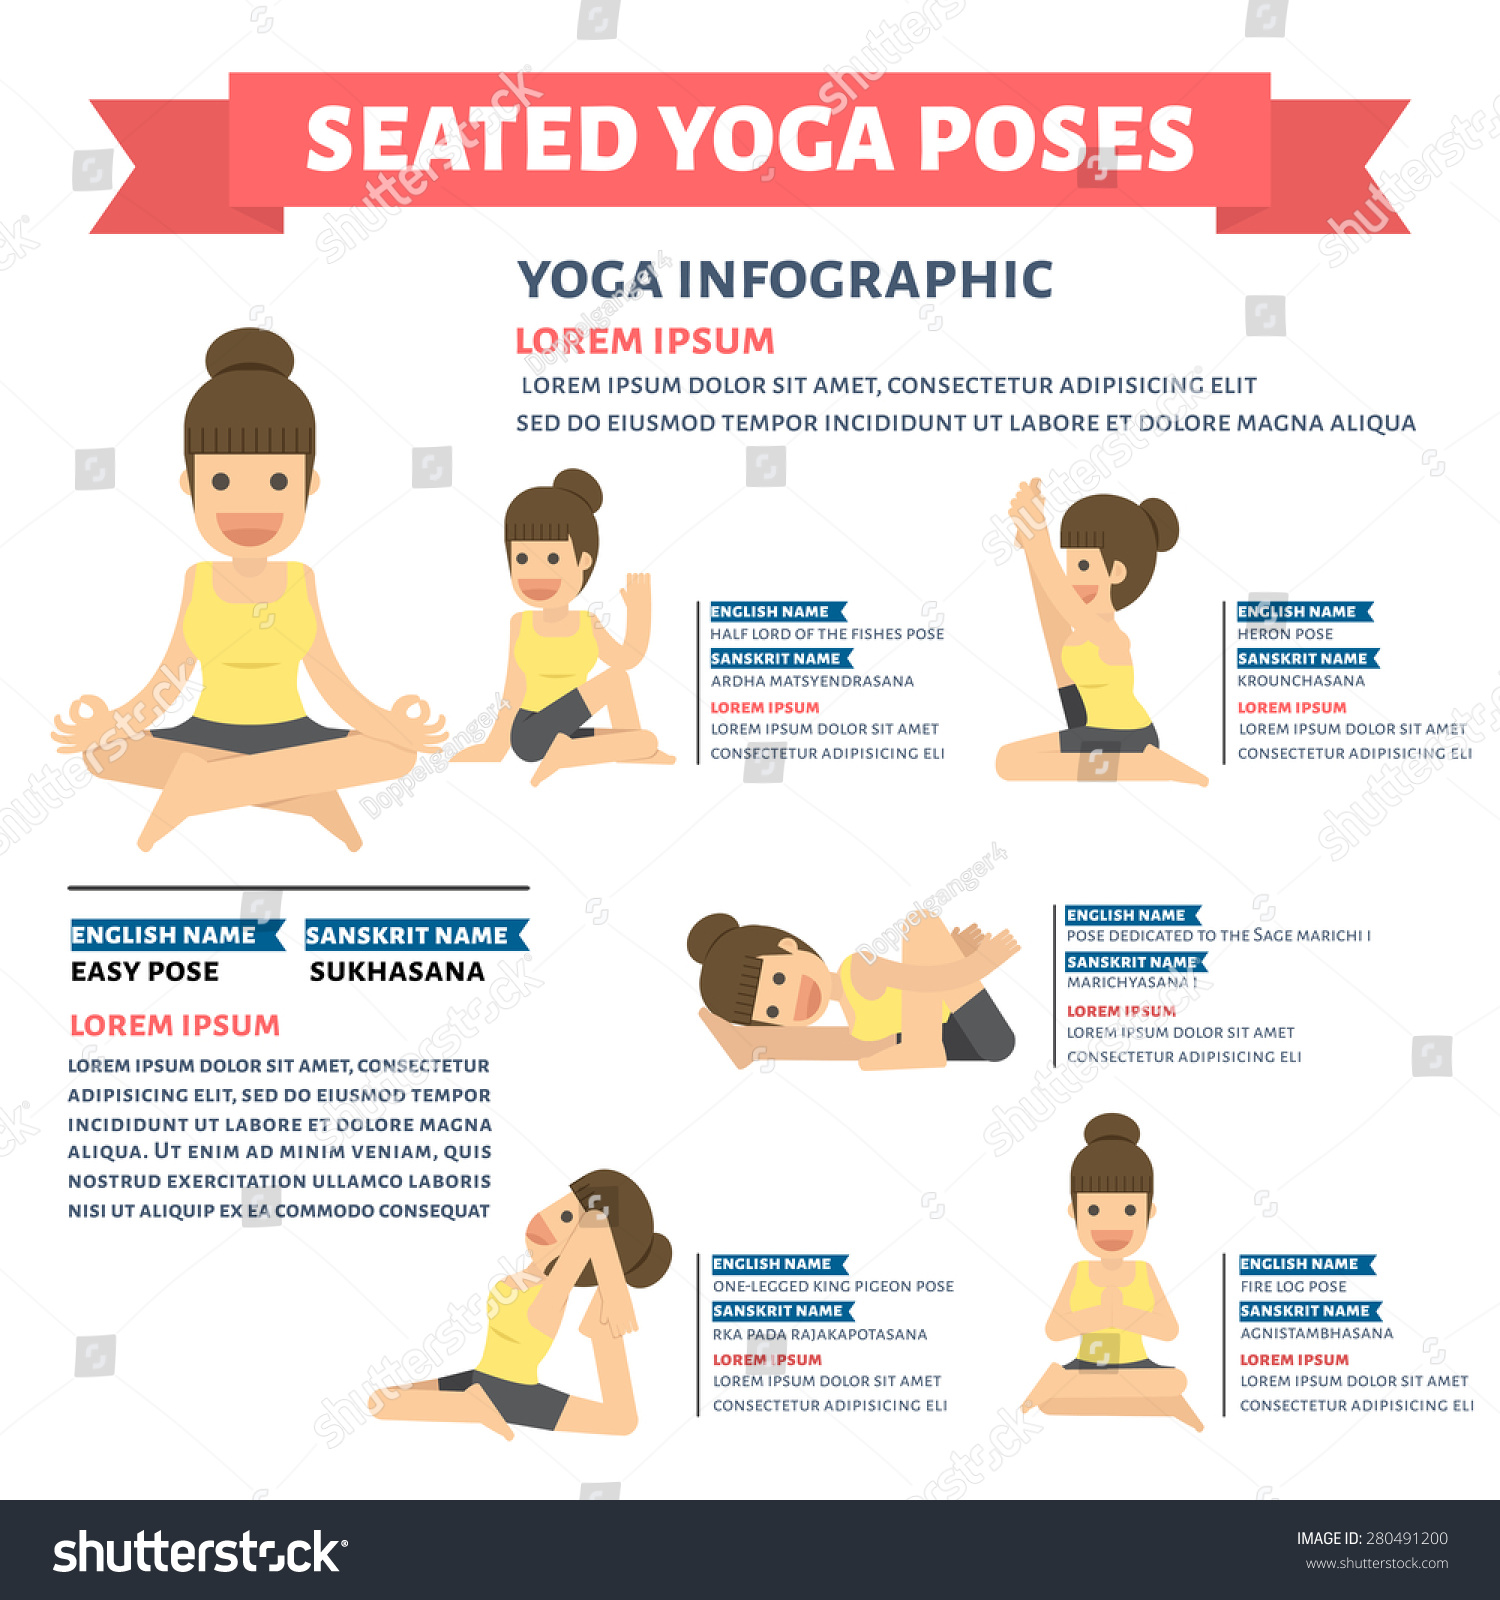 11+ Yoga Positions English Names | Yoga Poses